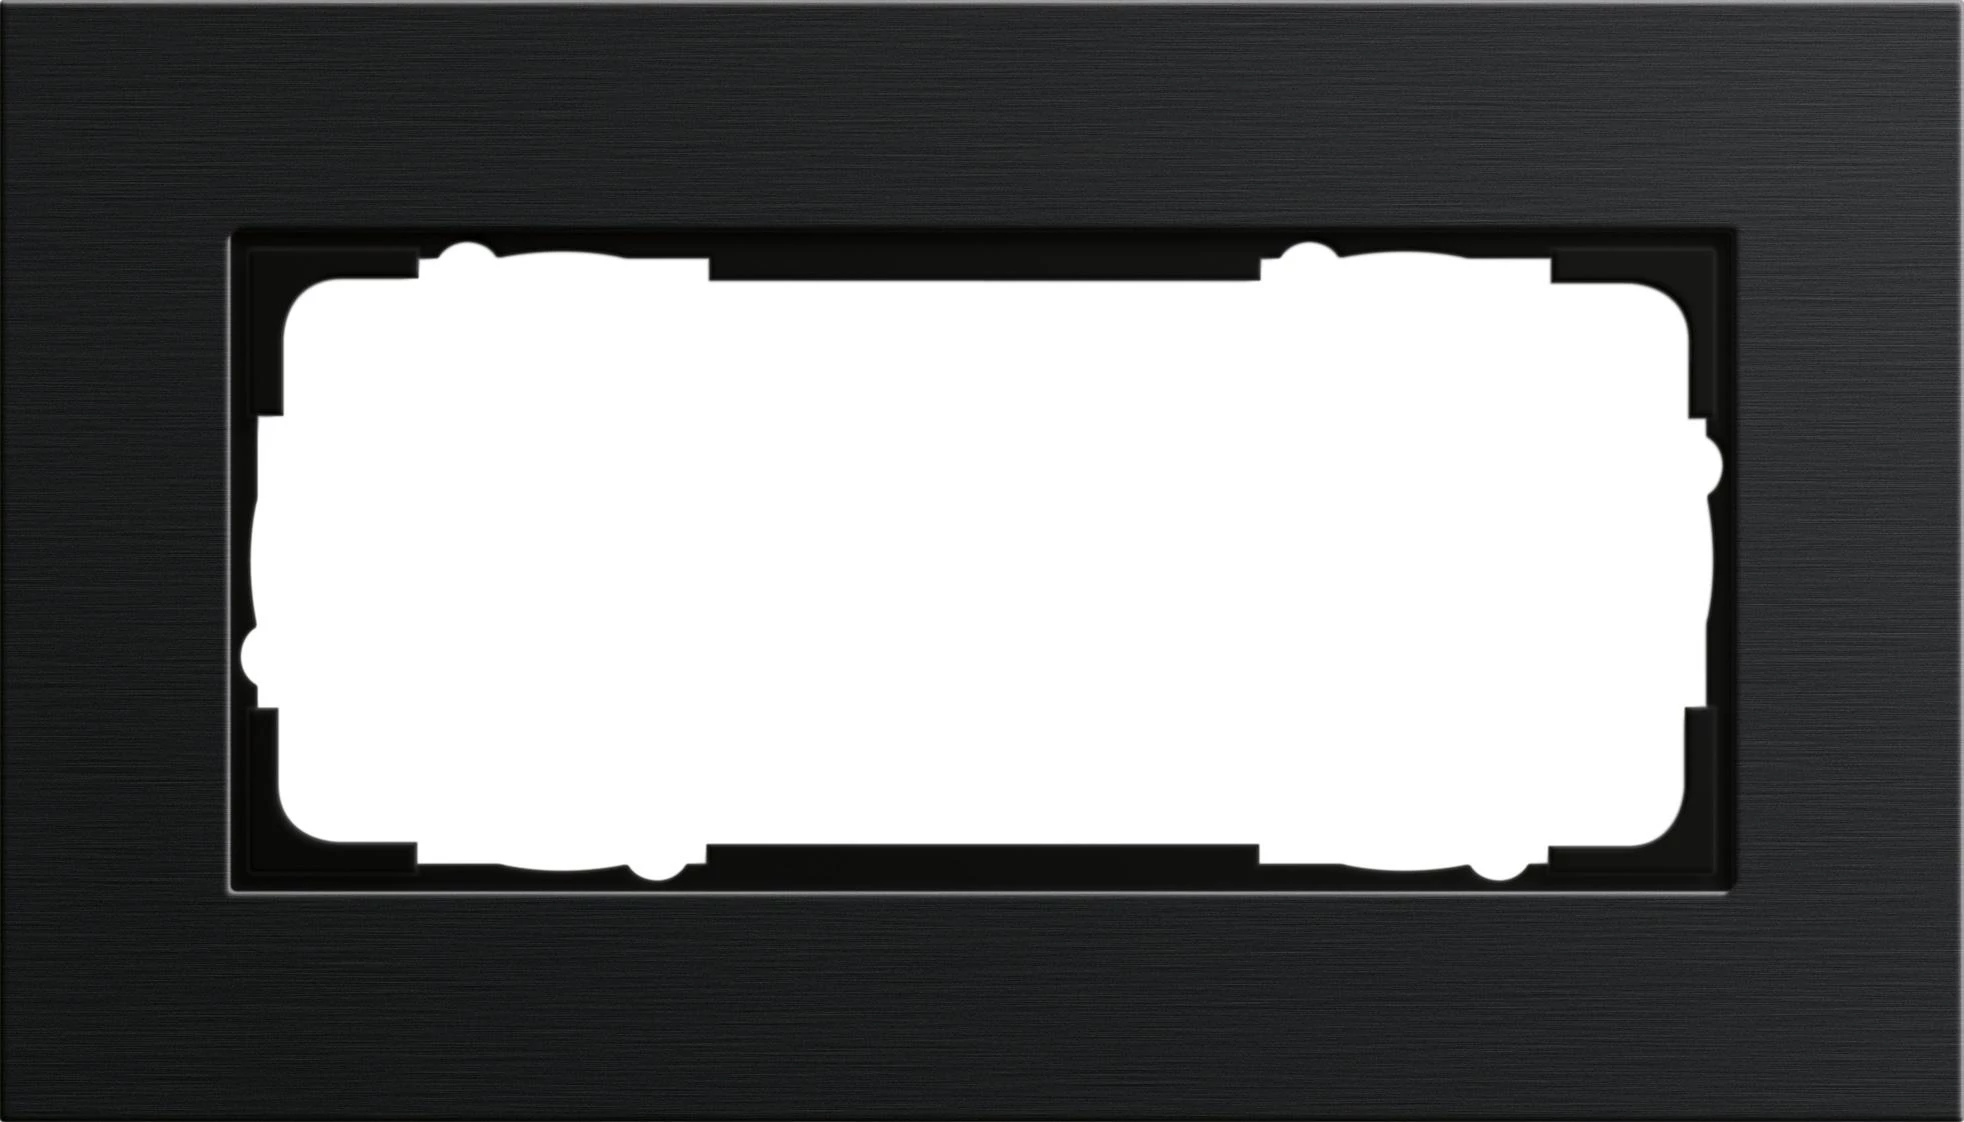  артикул 1002126 название Рамка двойная без перегородки, Алюминий Черный (анодированный), серия Esprit